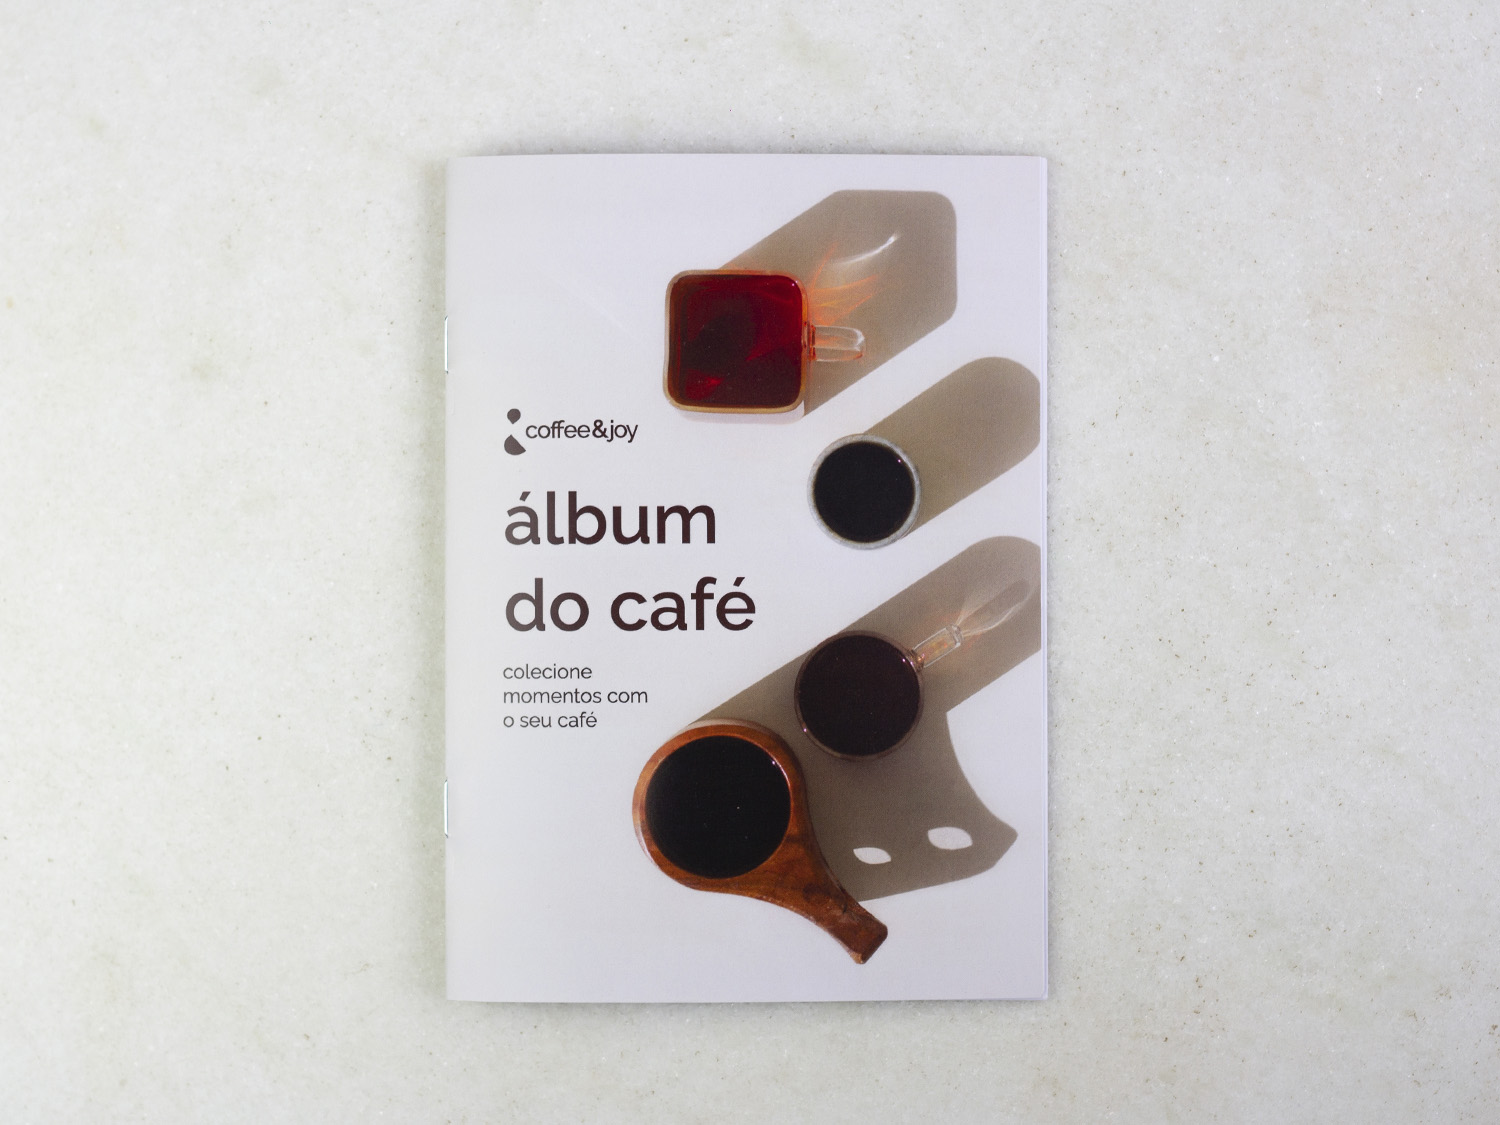 Coffeeandjoy album do cafe2